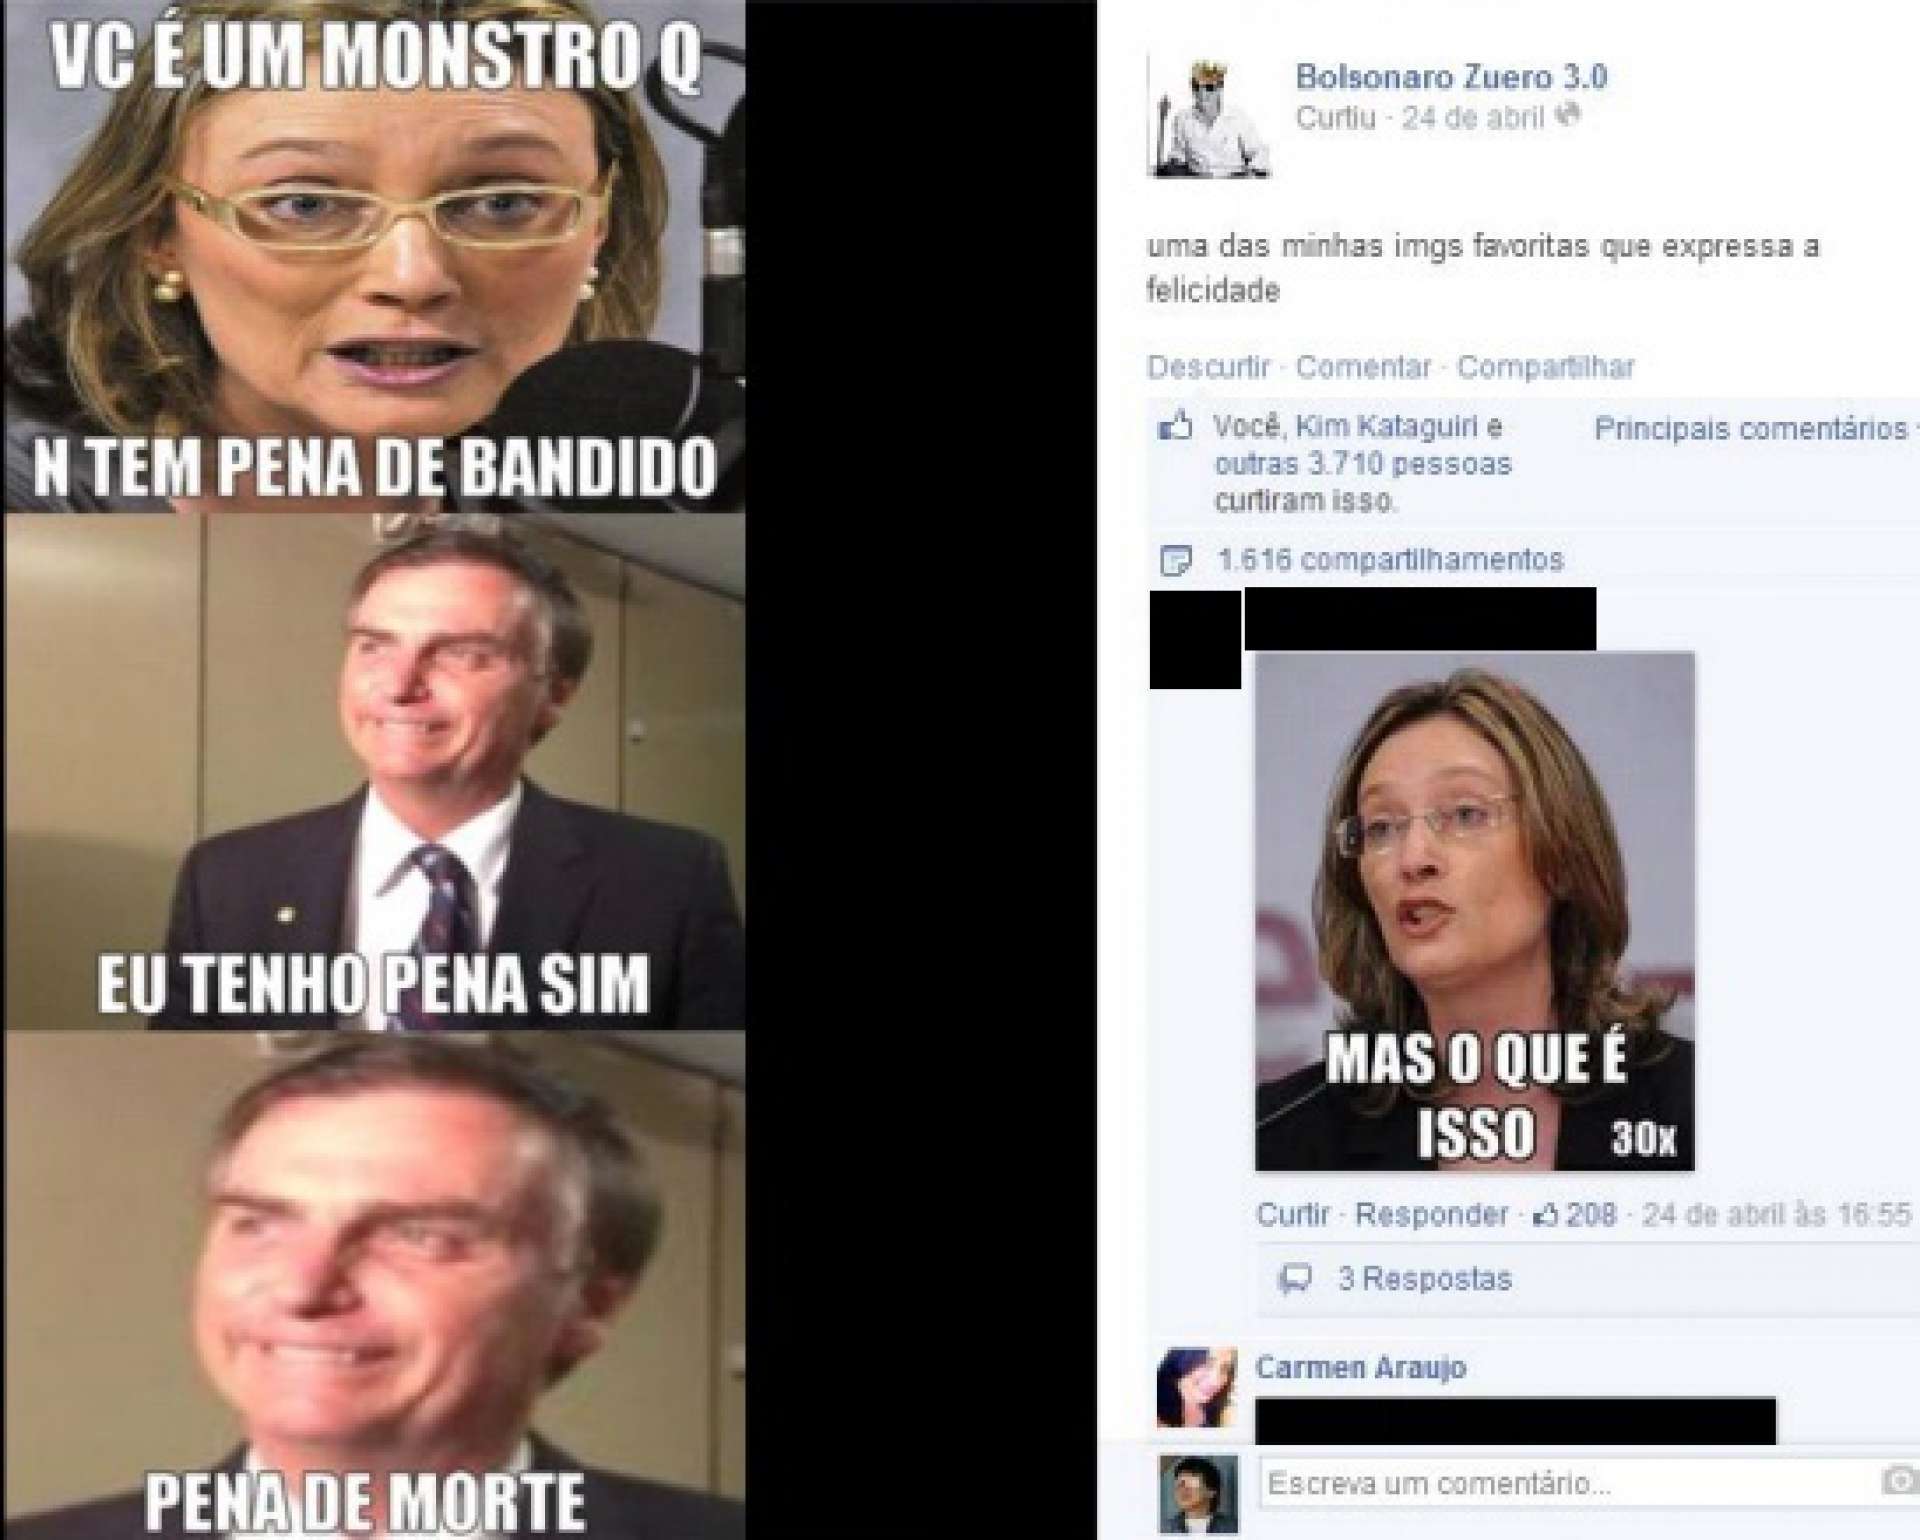 Reprodução de postagem da página Bolsonaro Zuero(Foto: Reprodução)